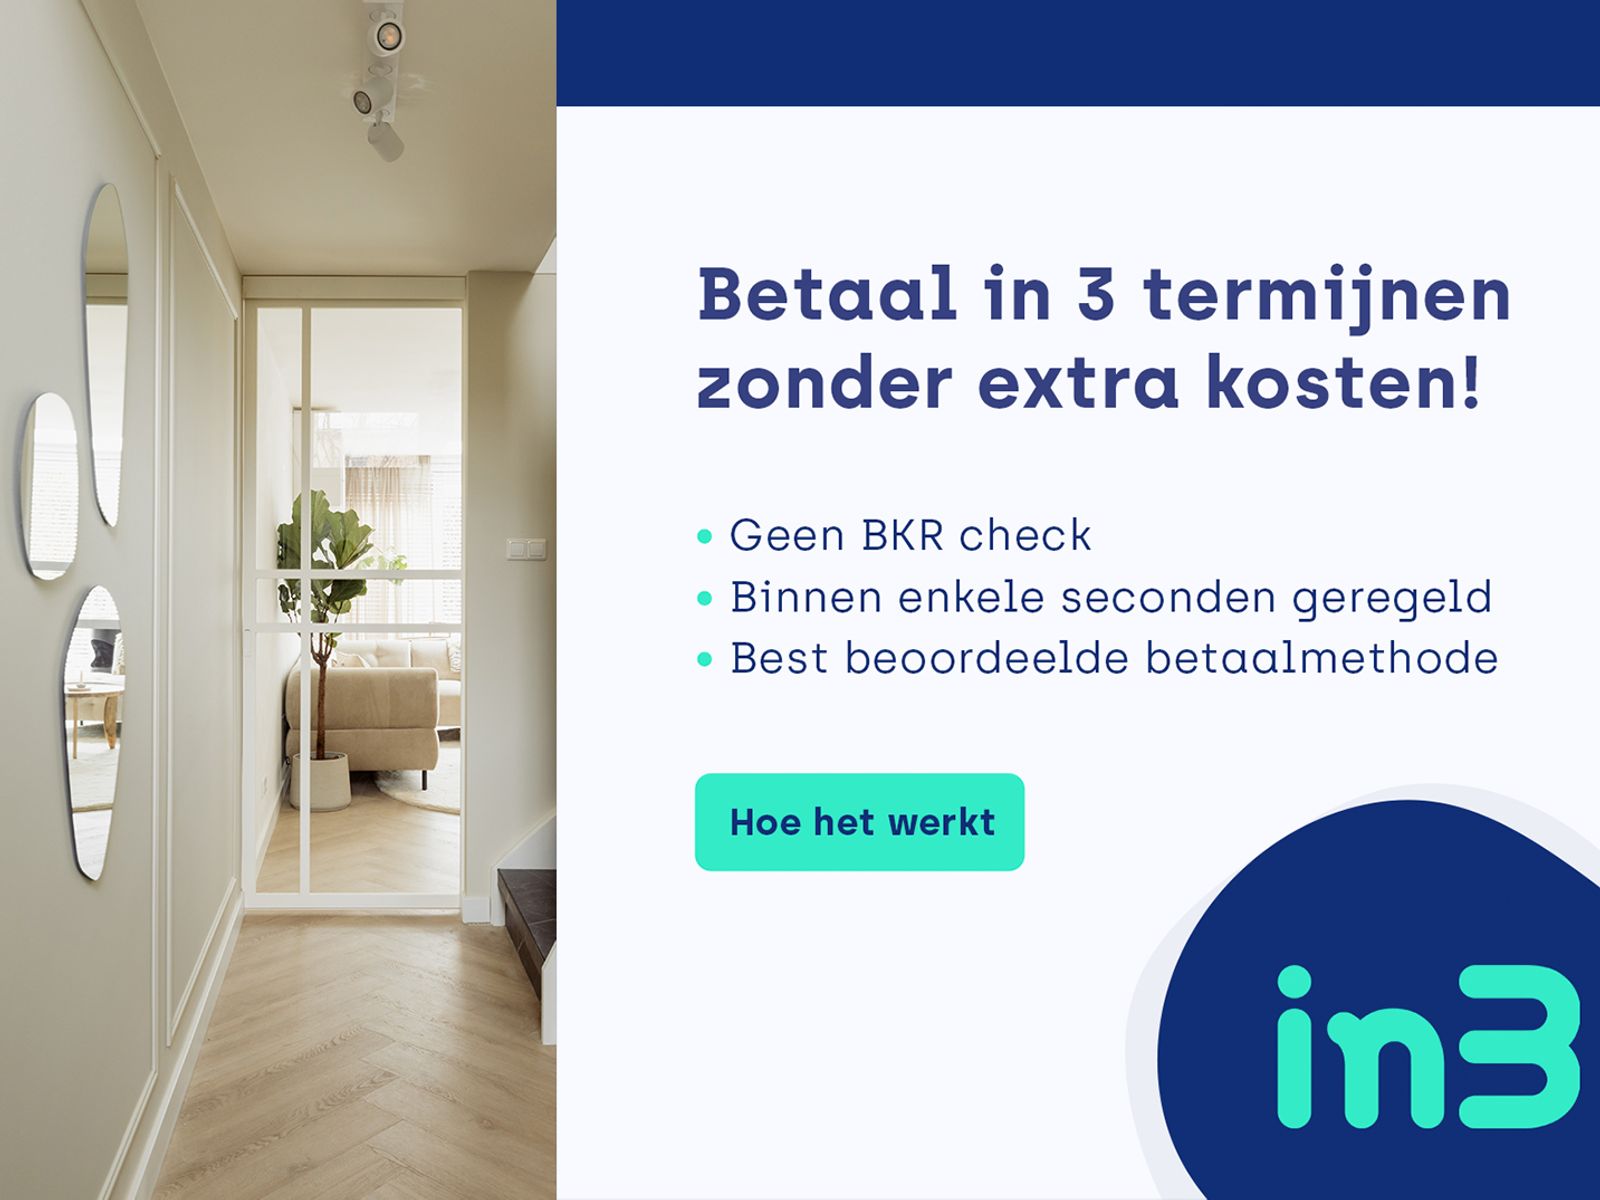 Vloer betalen in termijnen? Dat kan bij vloerloods.nl!